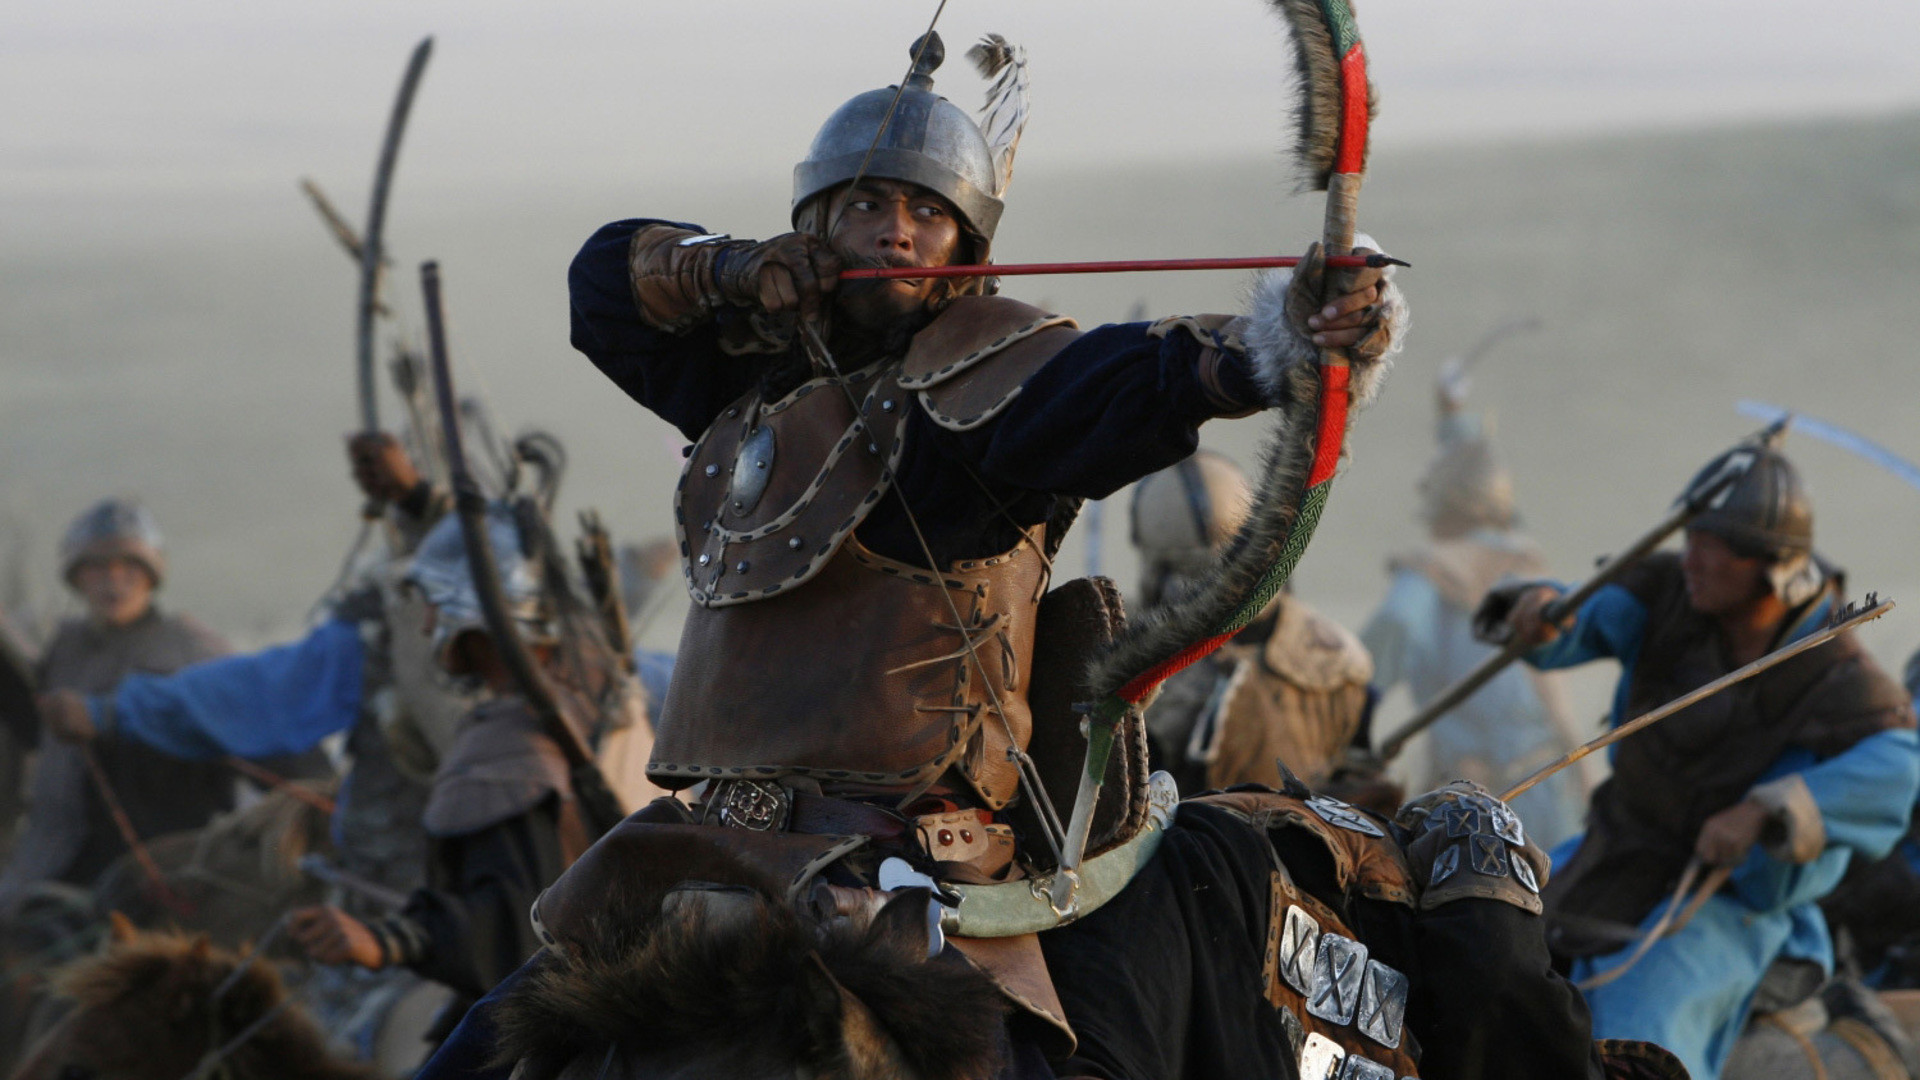 Аравт – 10 солдат Чингисхана